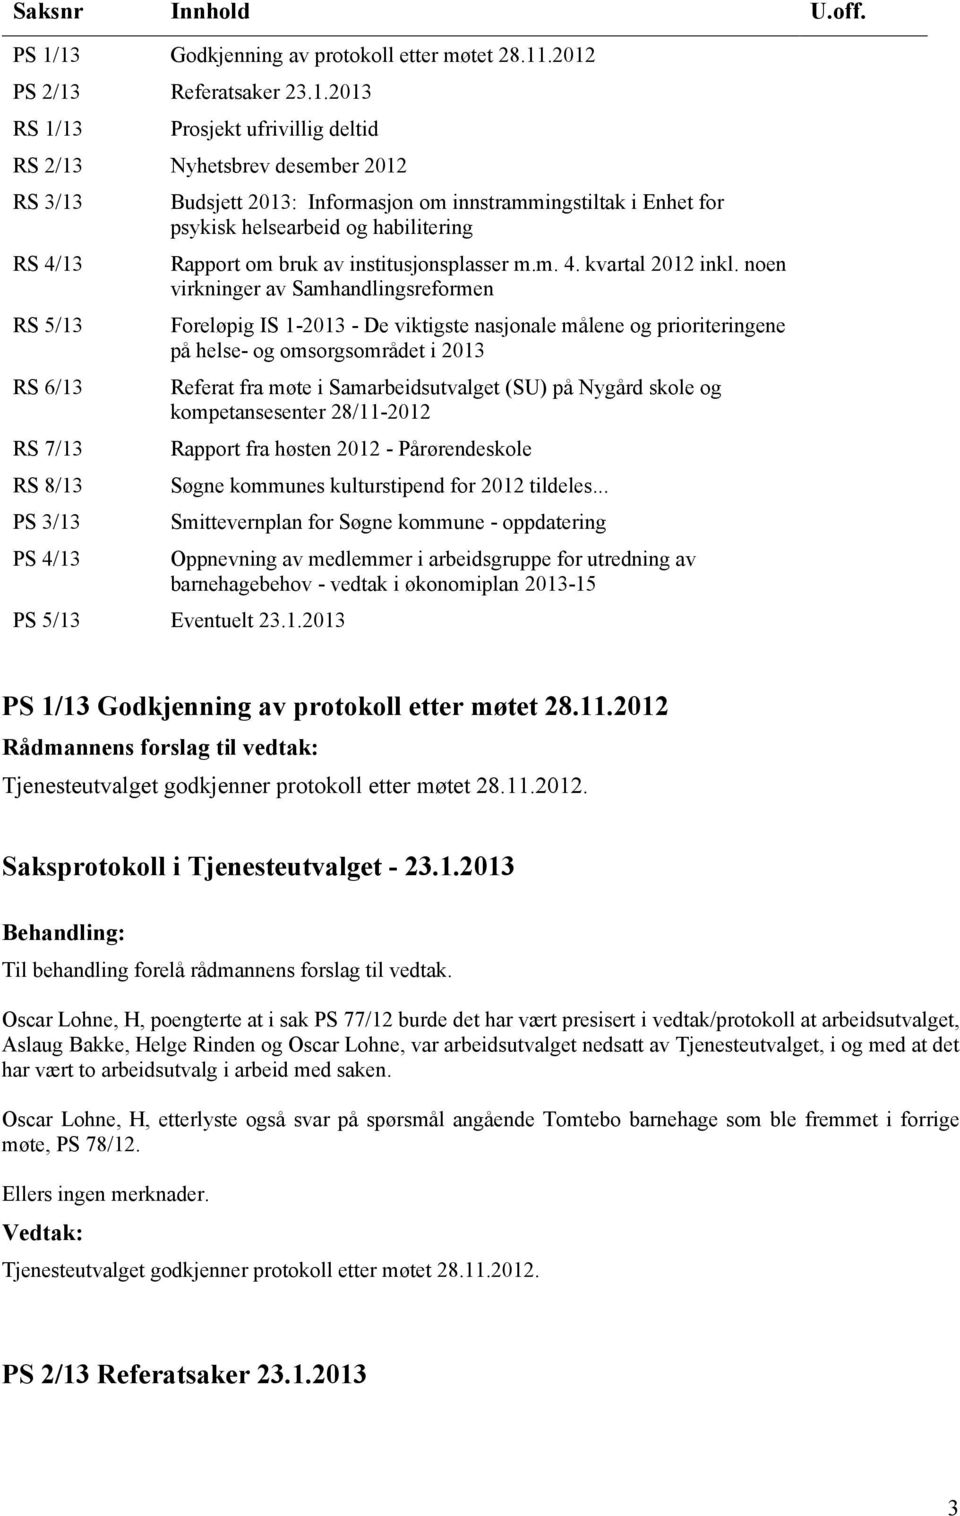 PS 3/13 PS 4/13 Budsjett 2013: Informasjon om innstrammingstiltak i Enhet for psykisk helsearbeid og habilitering Rapport om bruk av institusjonsplasser m.m. 4. kvartal 2012 inkl.